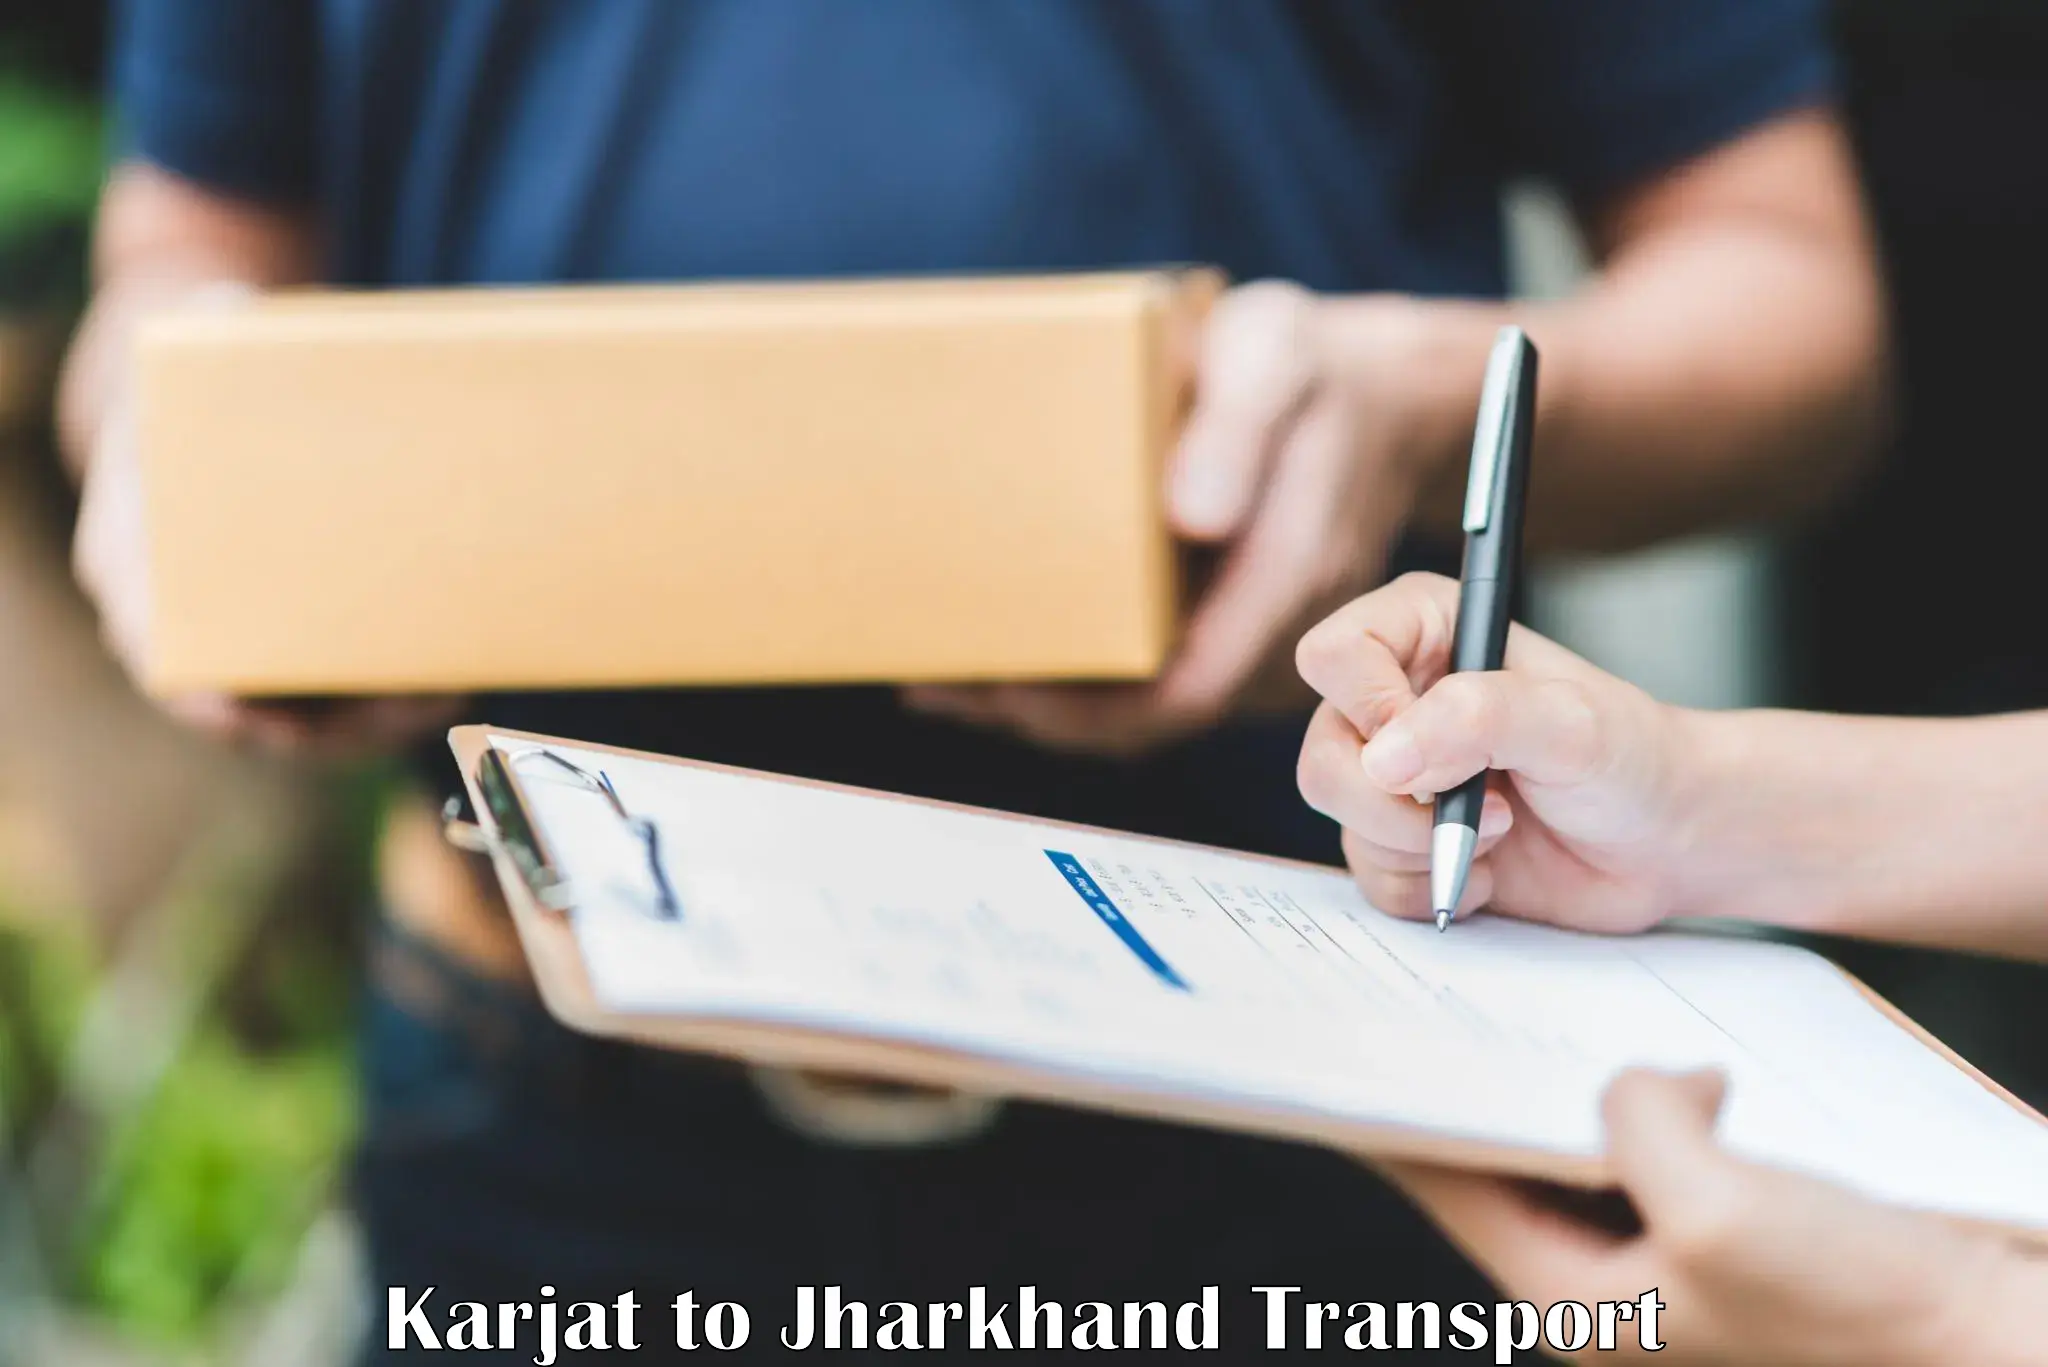 Online transport service Karjat to Kedla